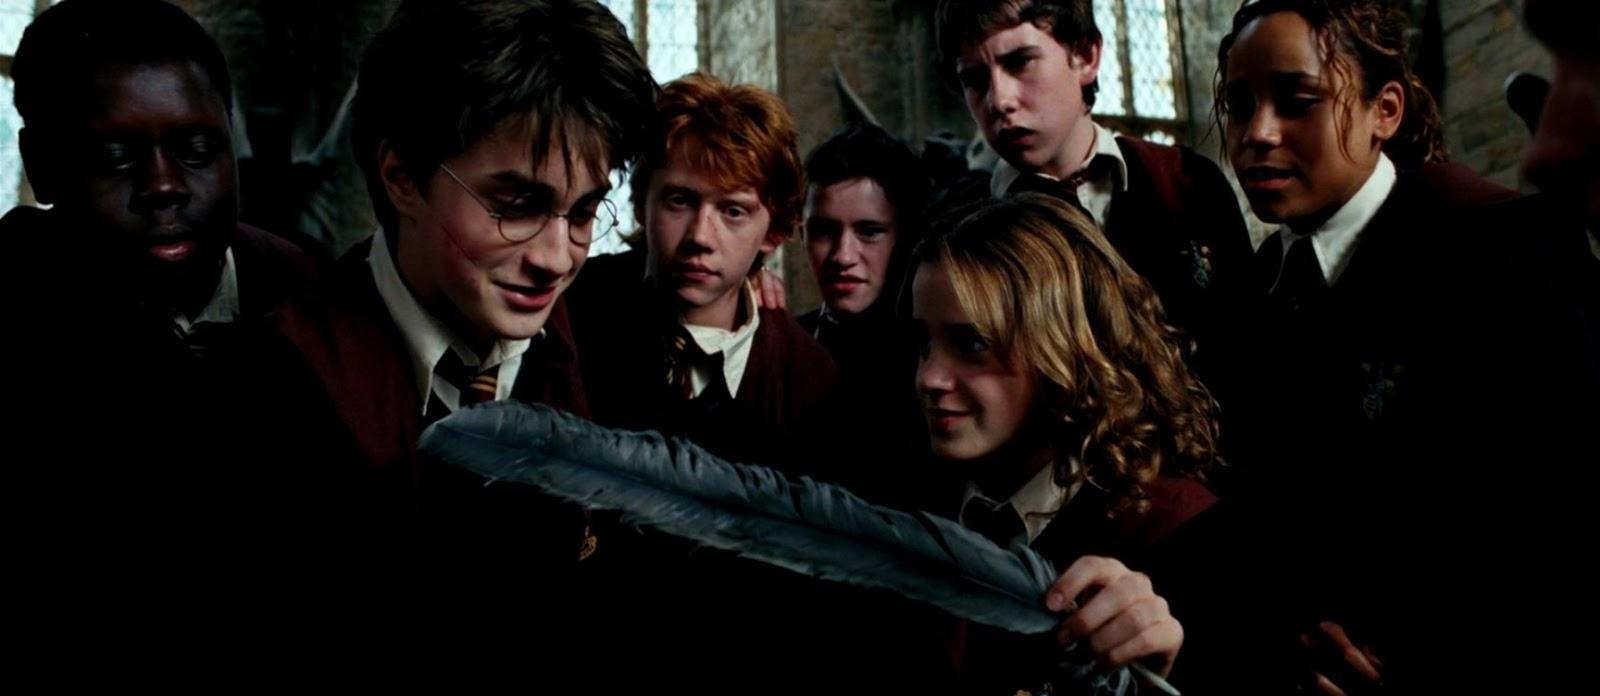 Harry Potter And The Prisoner Of Azkaban Hermione Granger Wallpaper